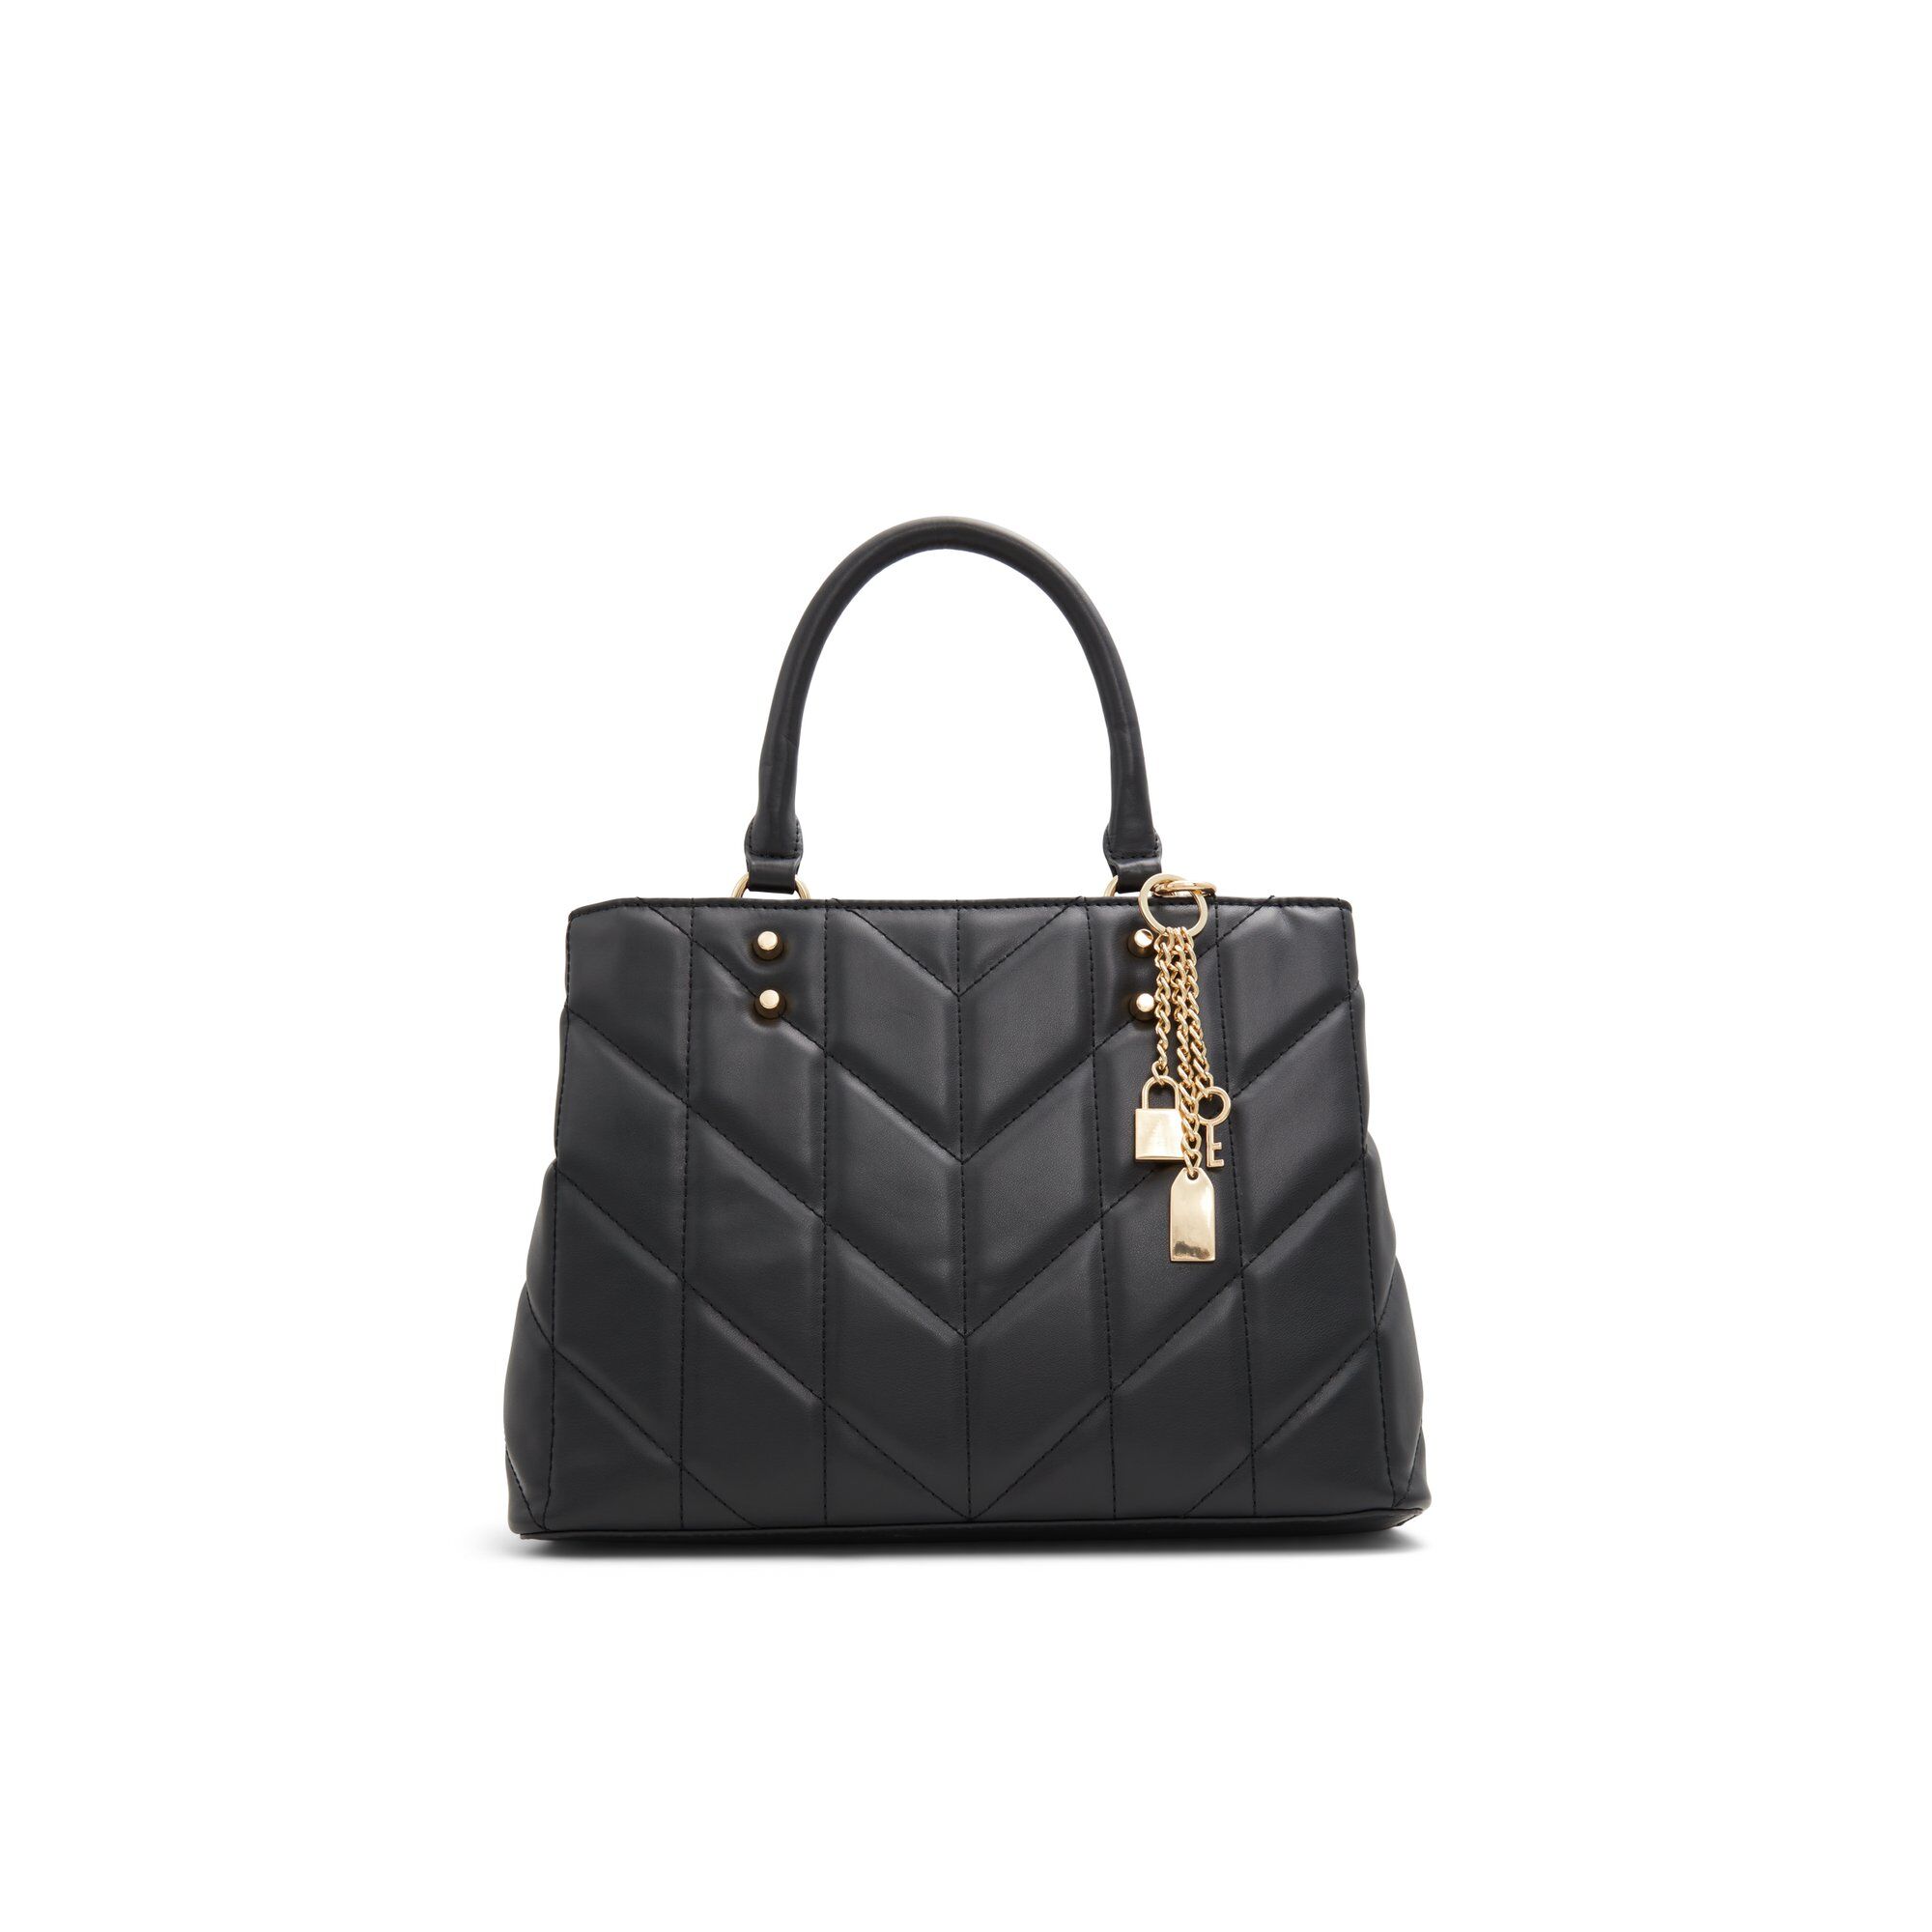 ALDO Safiraax - Women's Handbag - Black